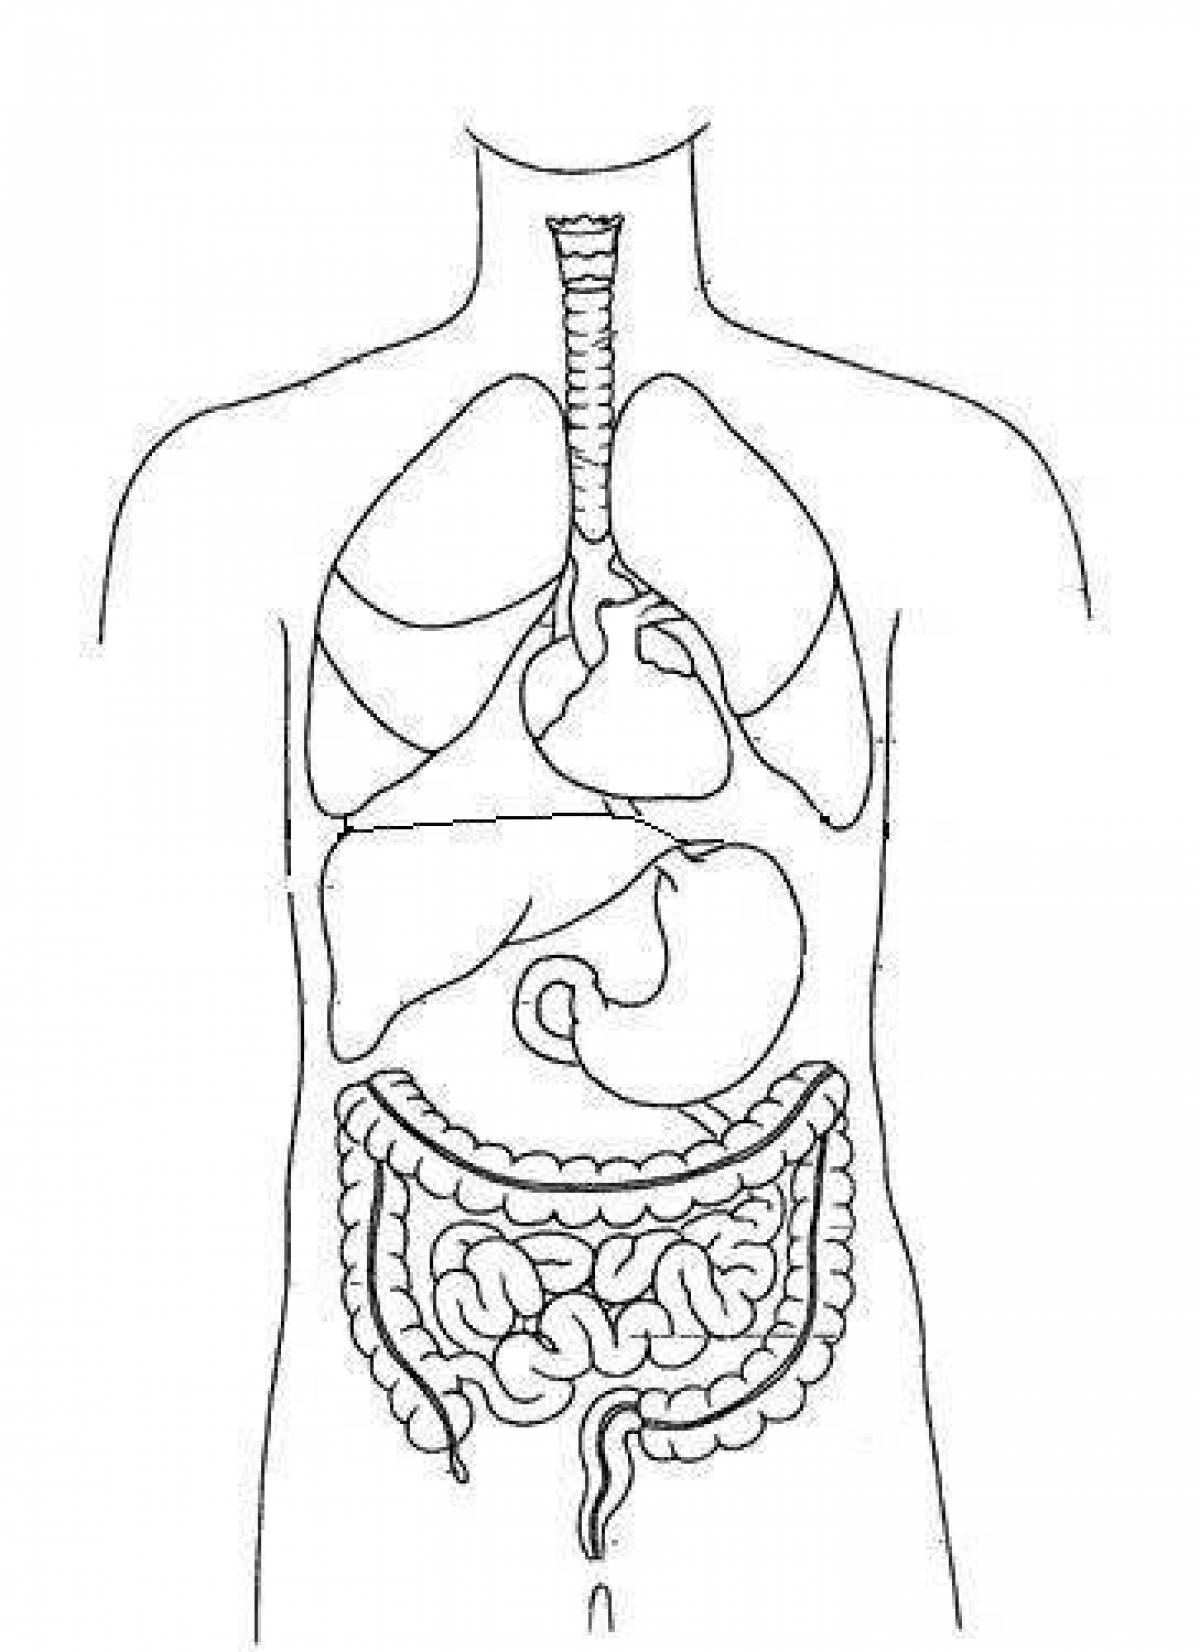 Human internal organs #5